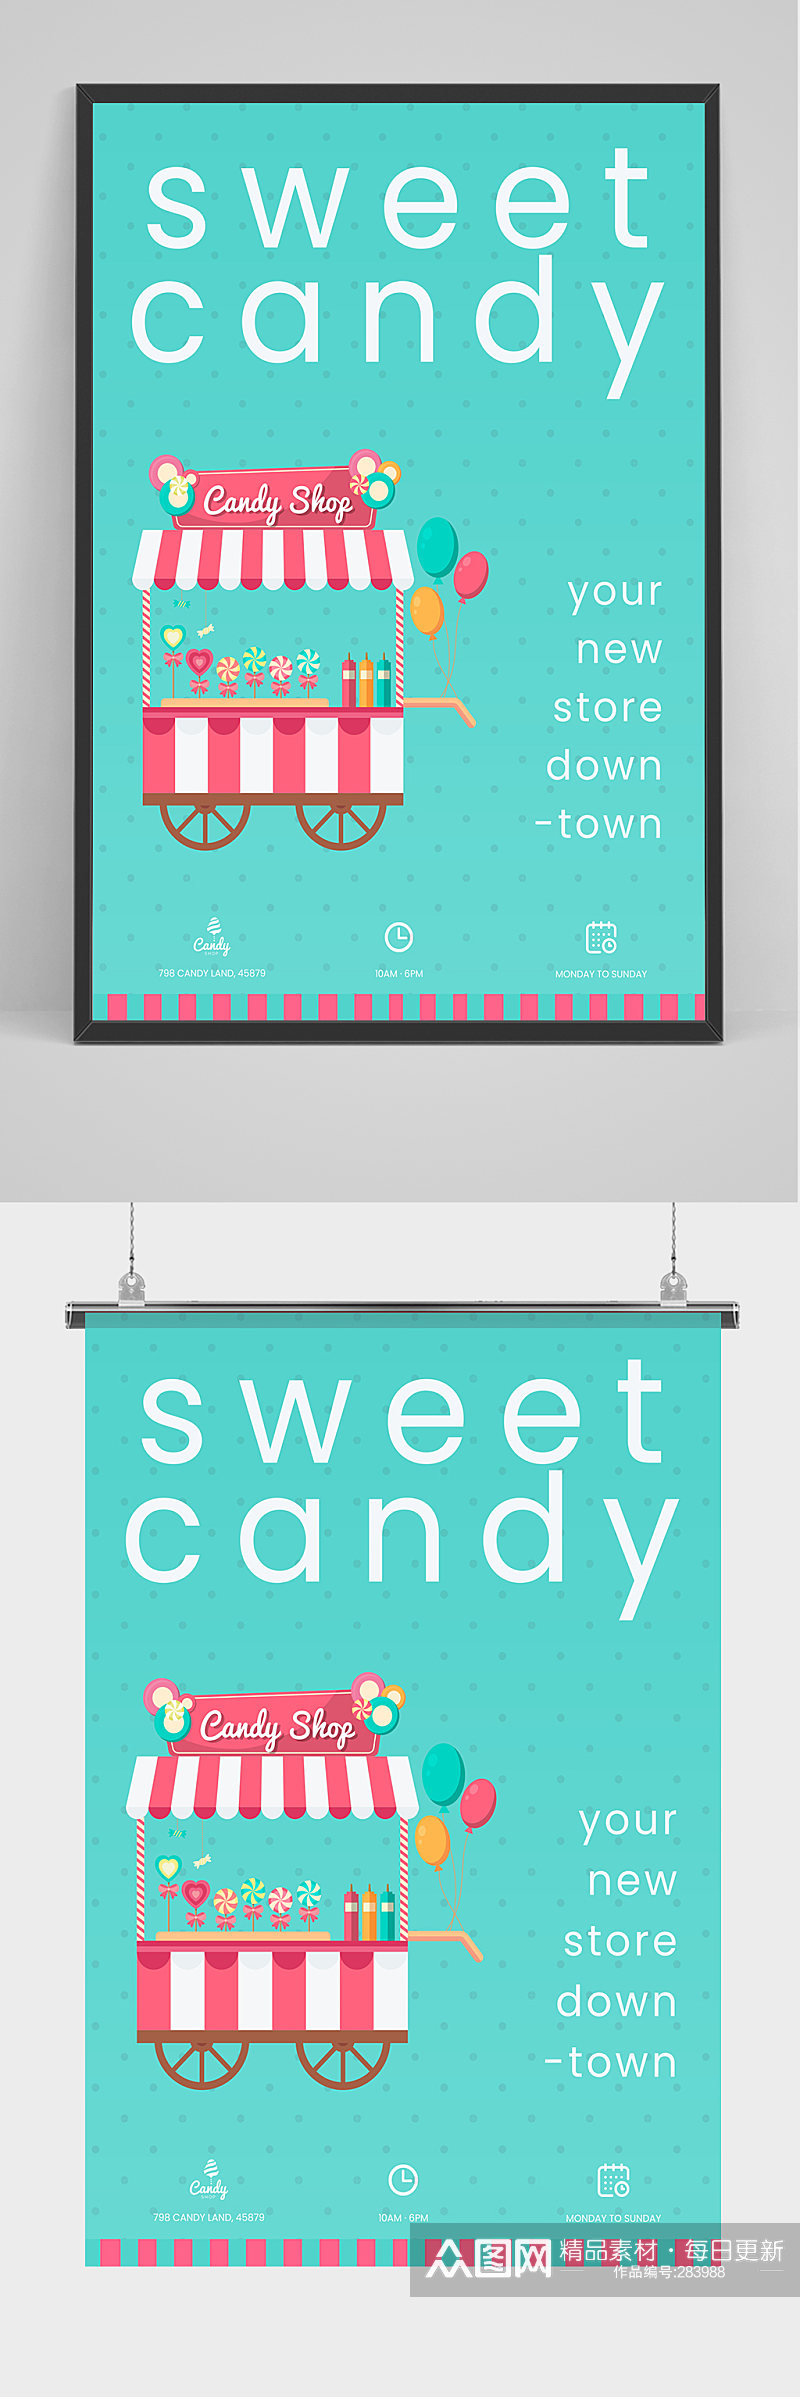 简洁大气棒棒糖海报设计素材